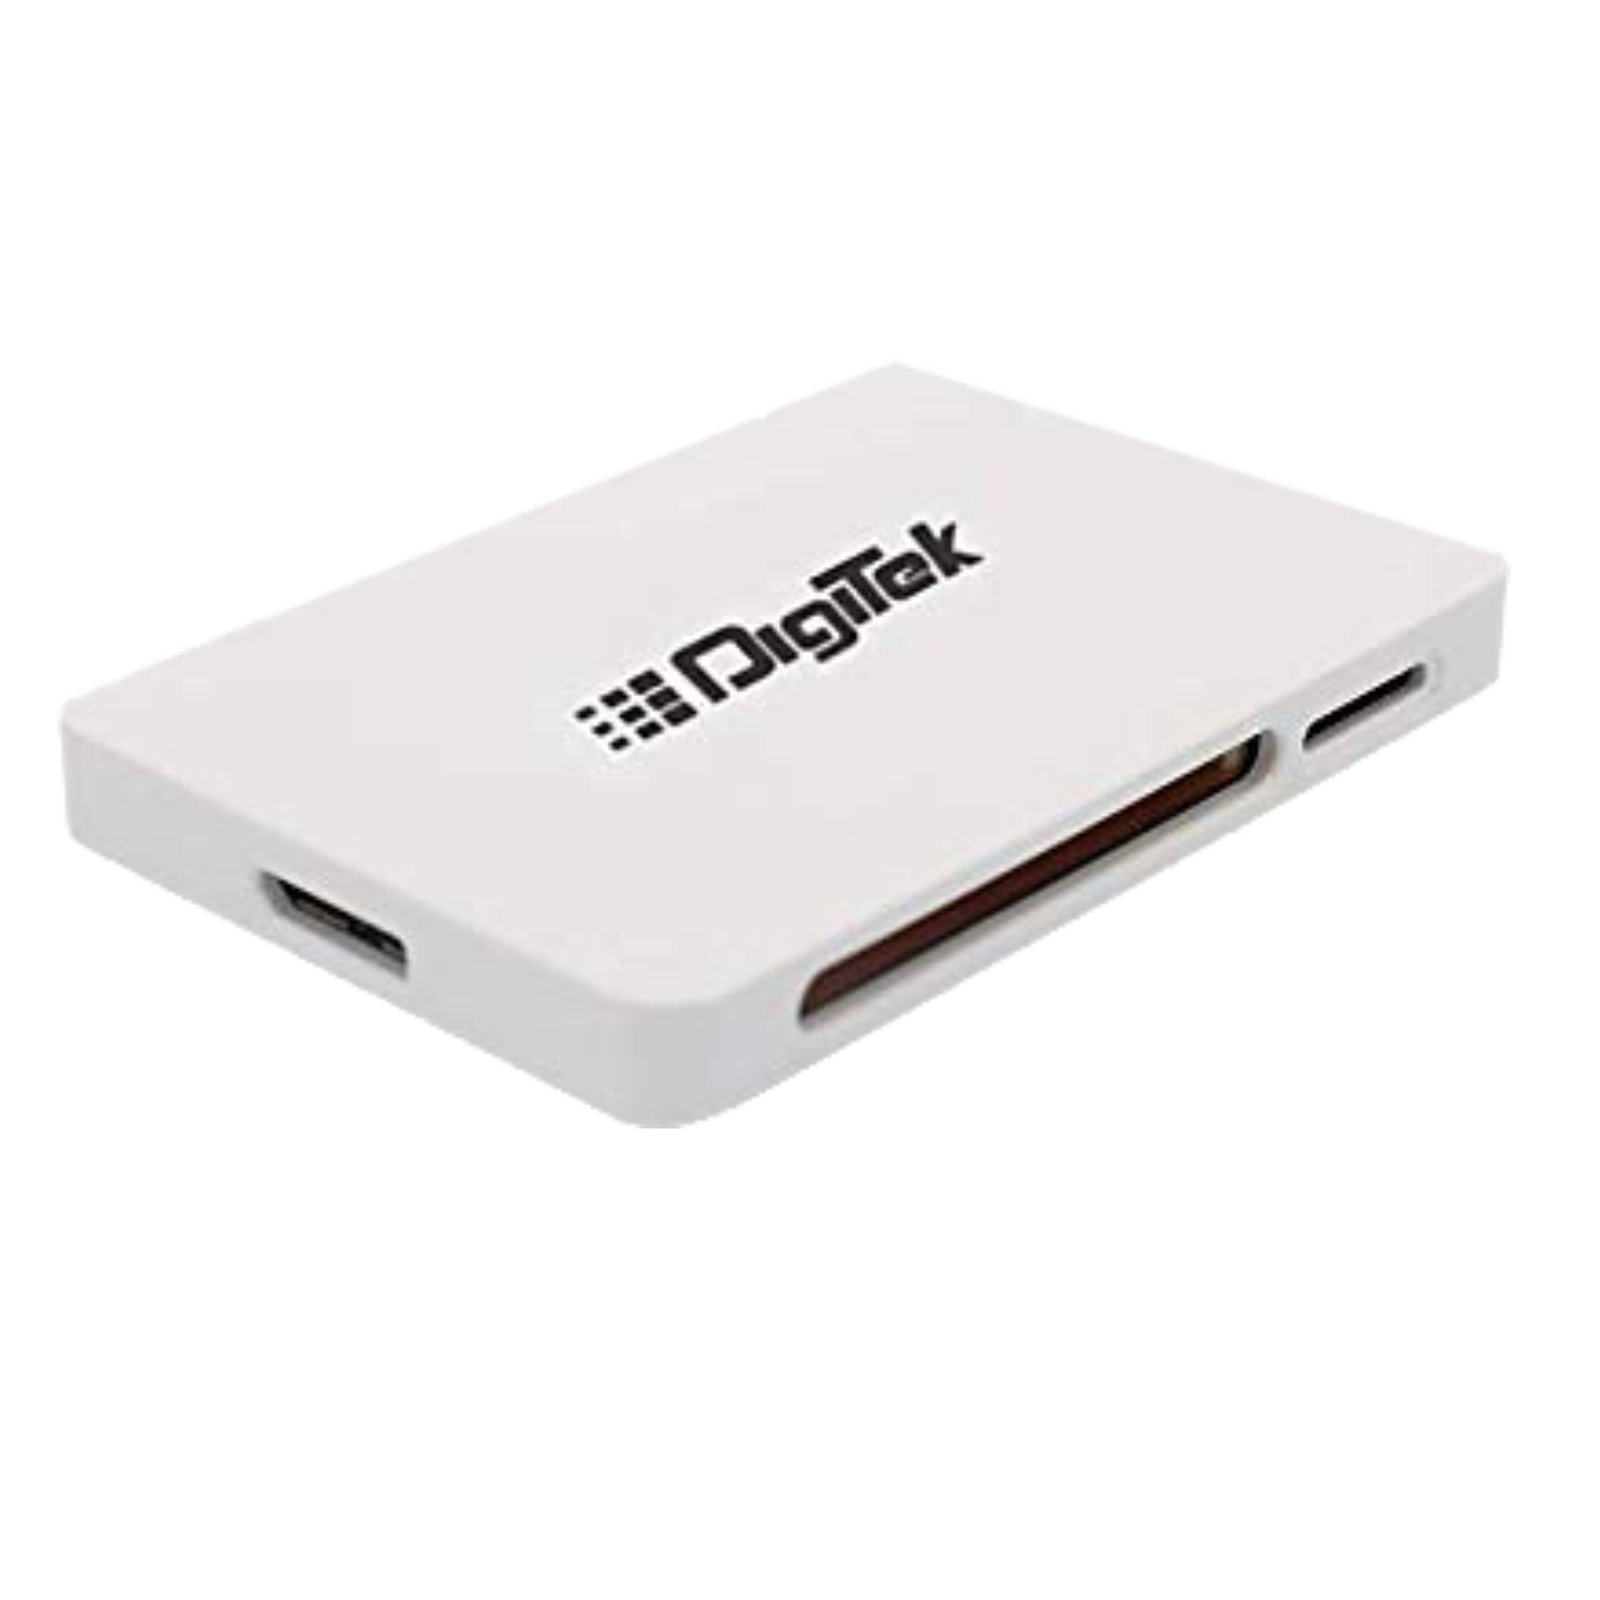 DigiTek DCR 022 USB 3.0 Card Reader (Transfer Speed Up To 5Gbps, B00BM2FELK, White)